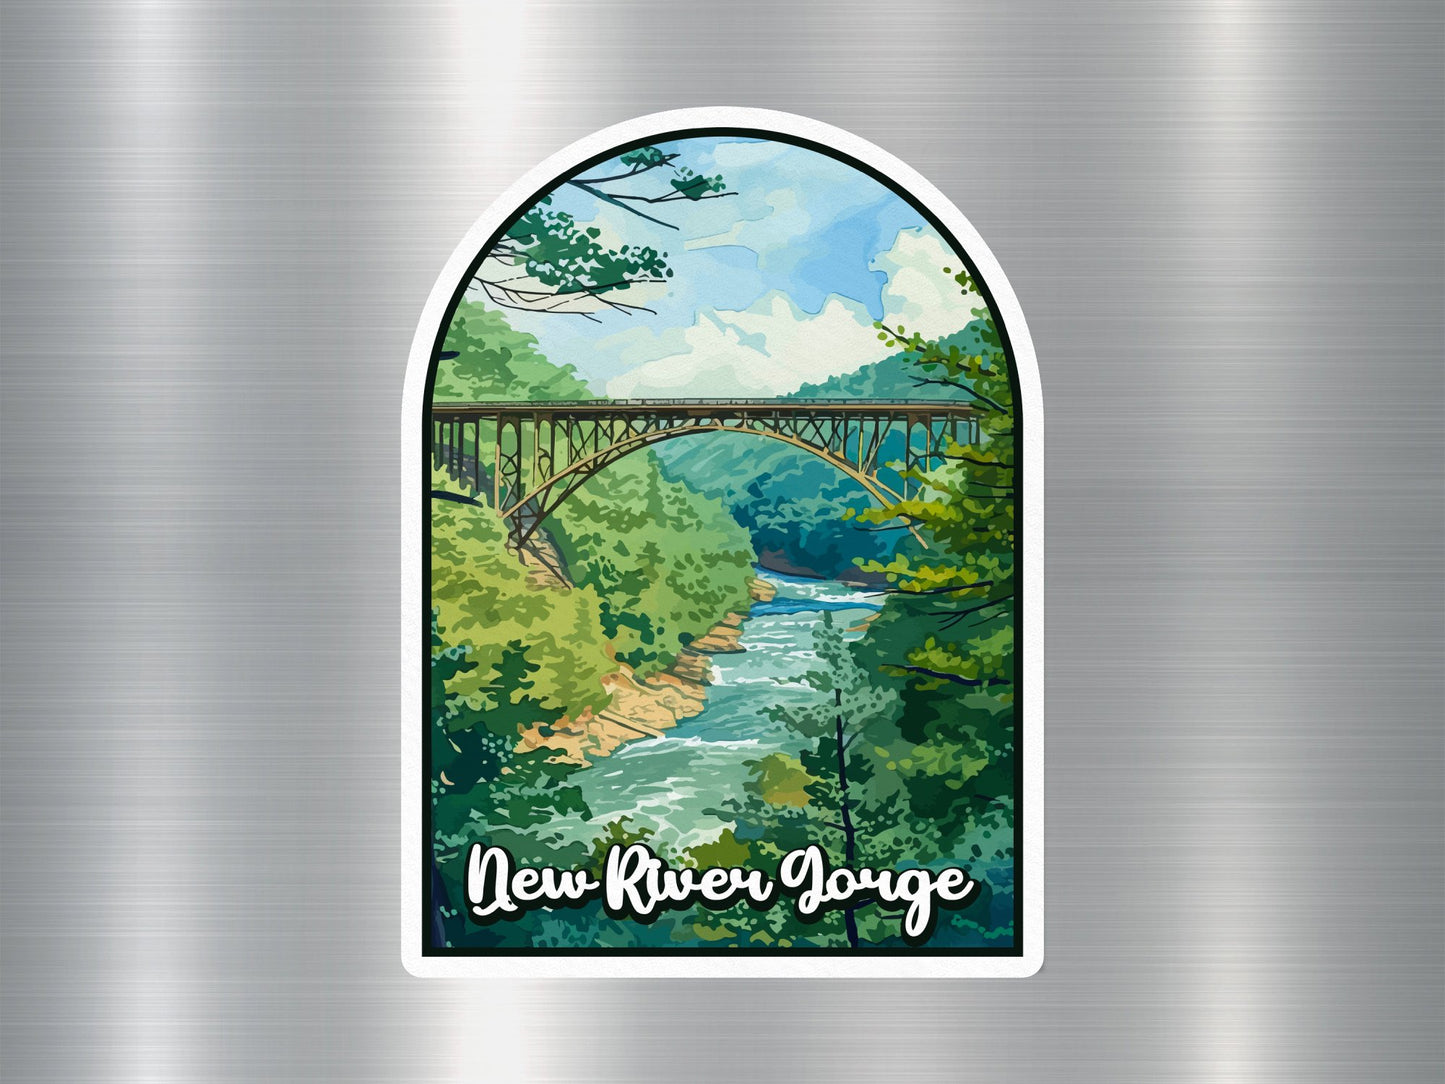 New River Gouge National Park Sticker